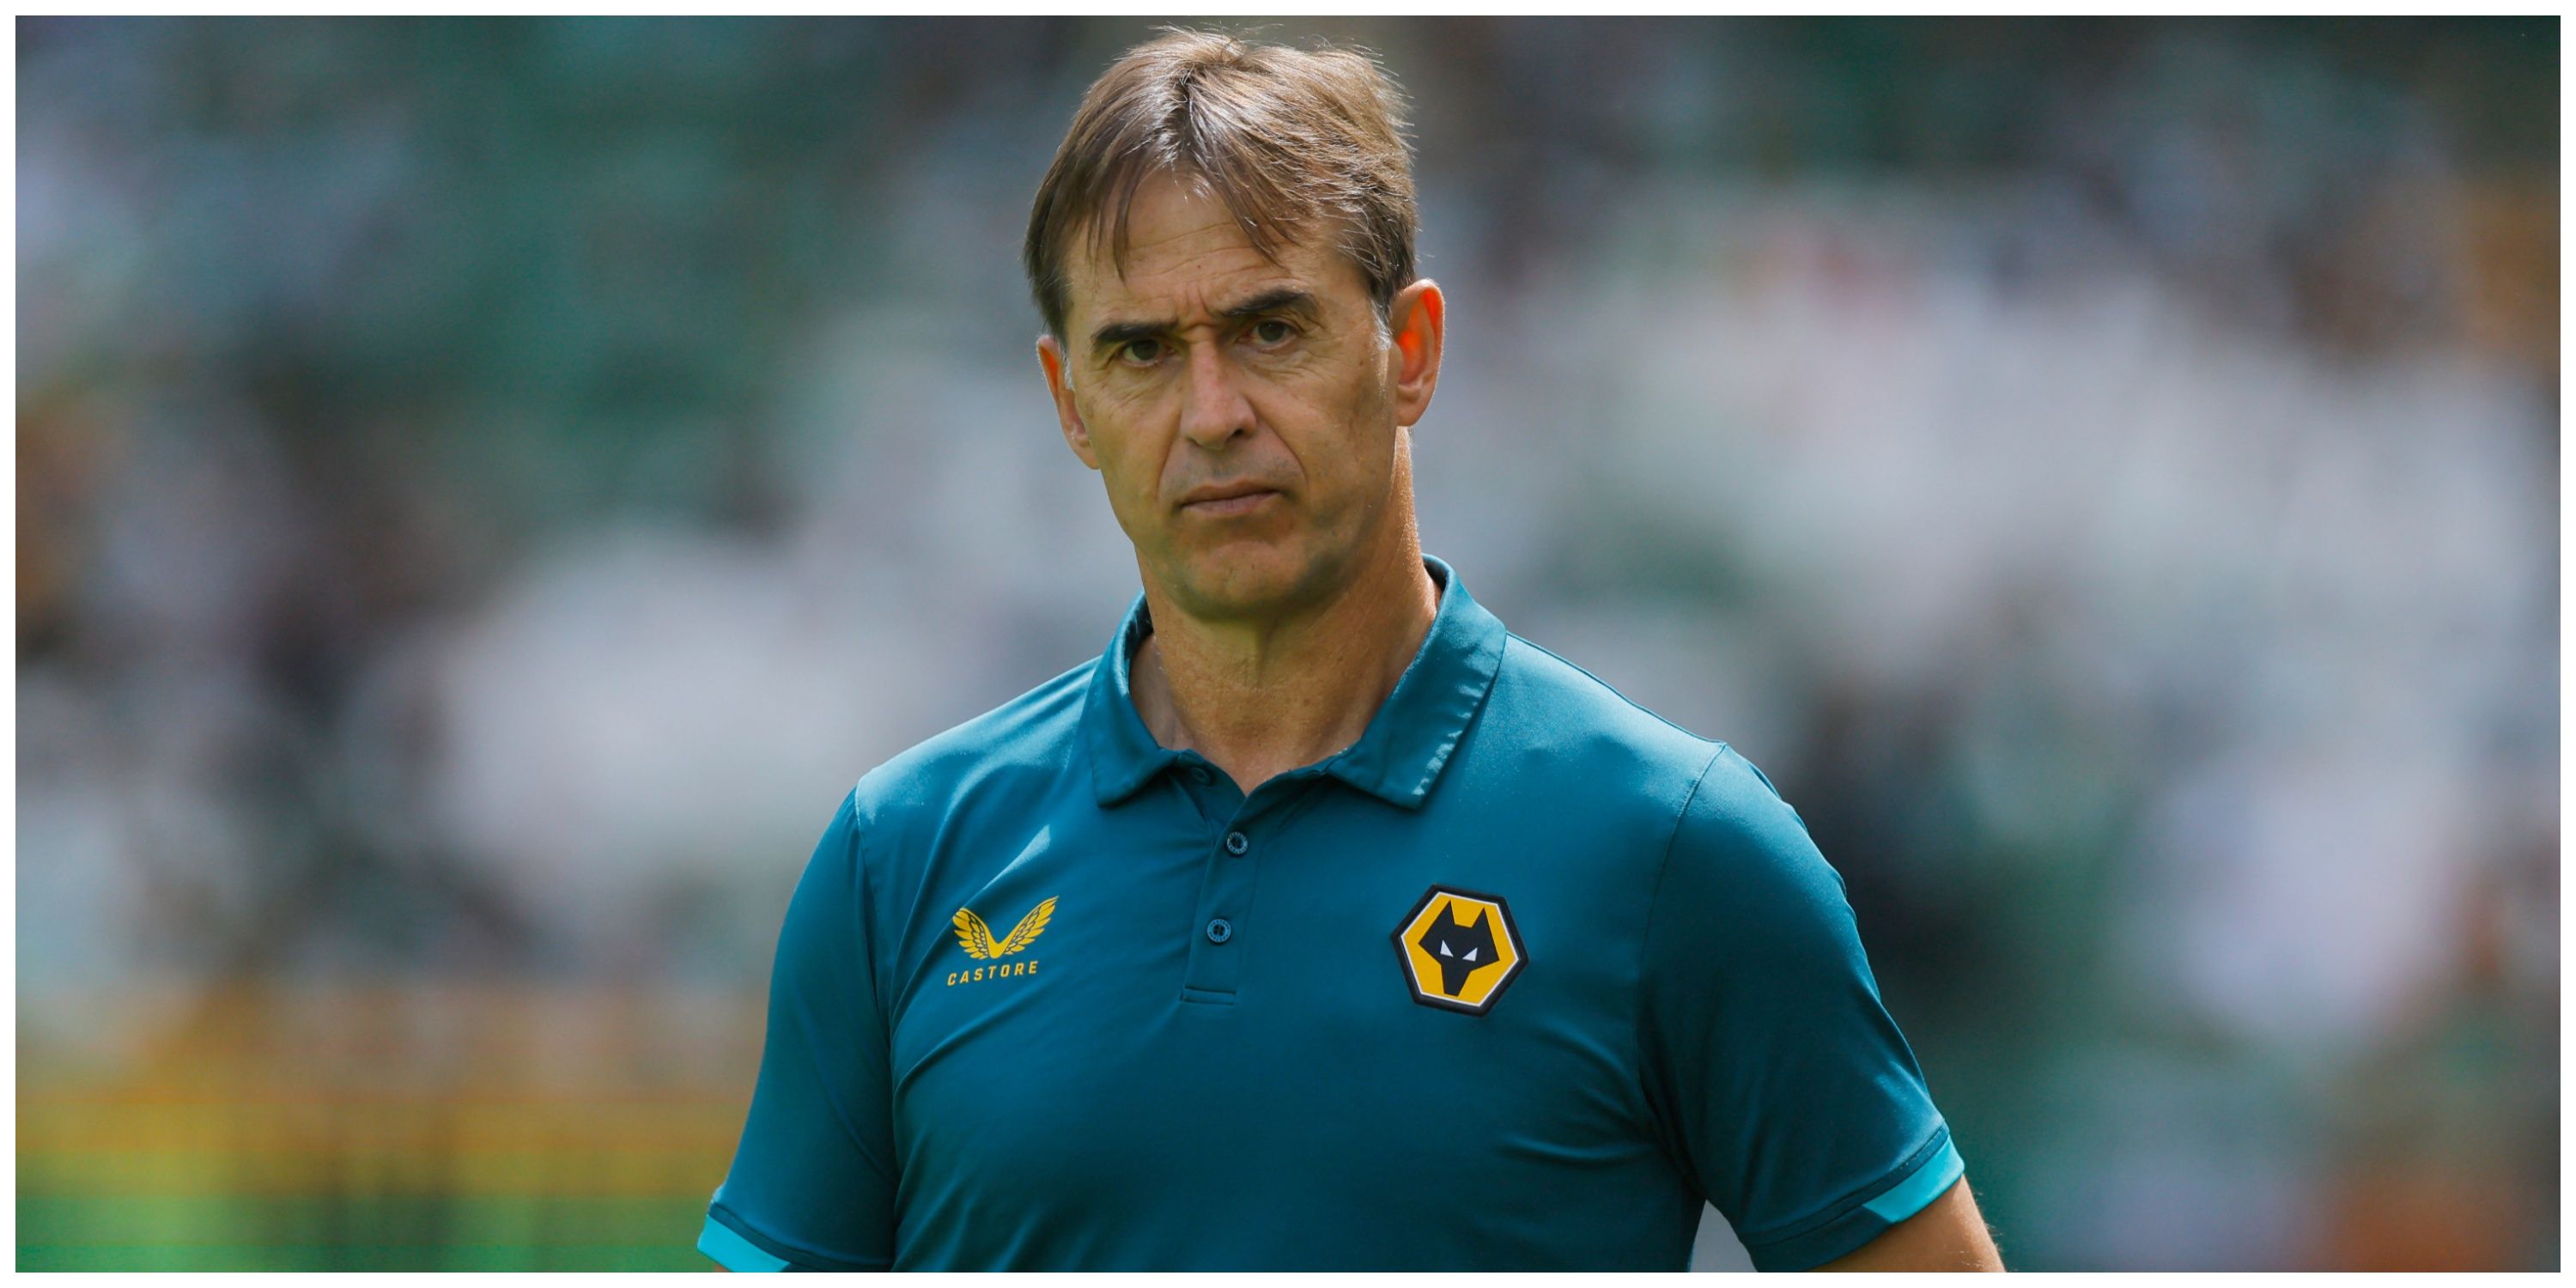 Wolverhampton Wanderers manager Julen Lopetegui